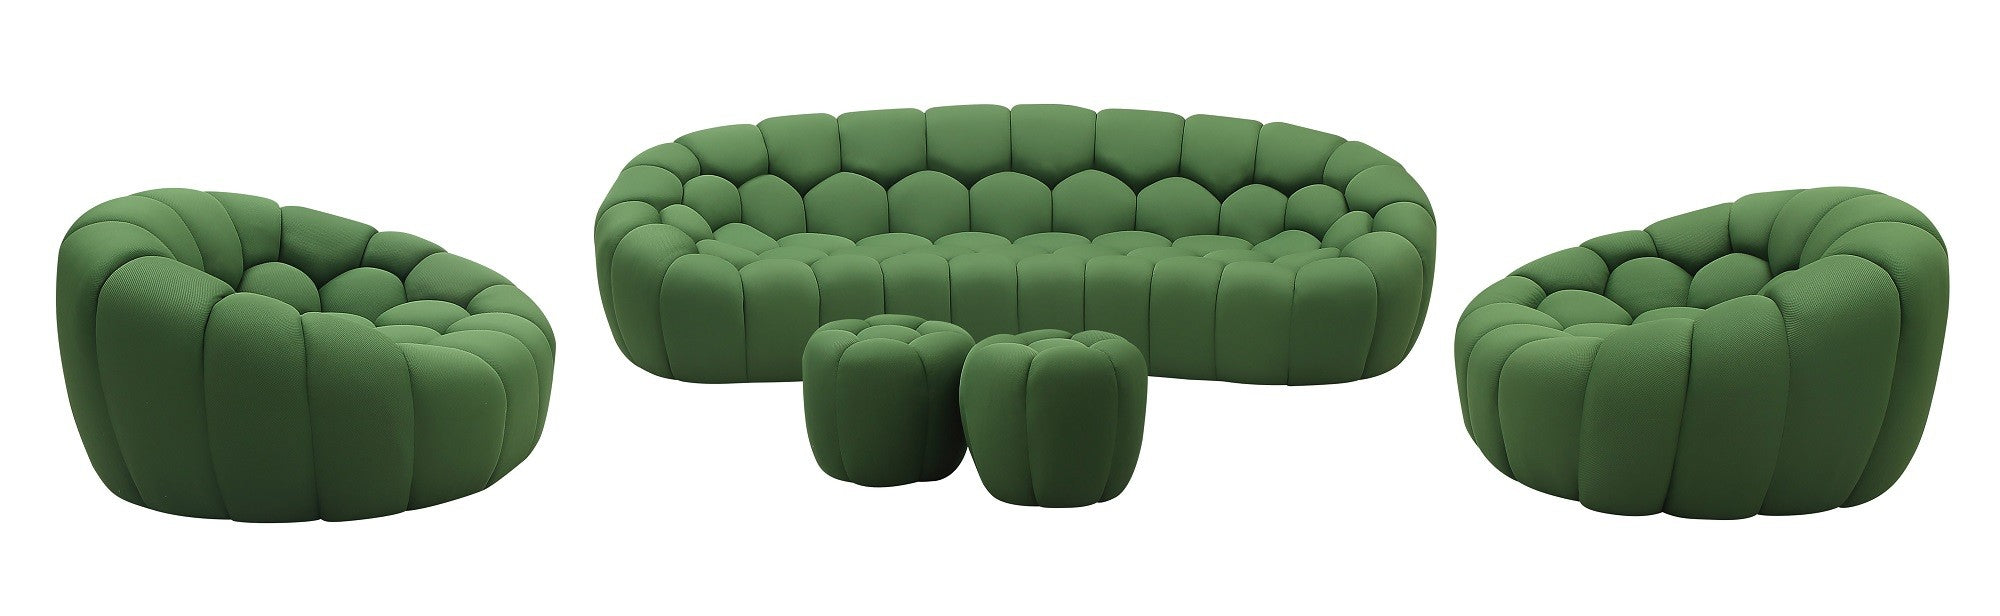 J&M Furniture - Fantasy 5 Piece Sofa Living Room Set in Green - 18442-5SET-GN